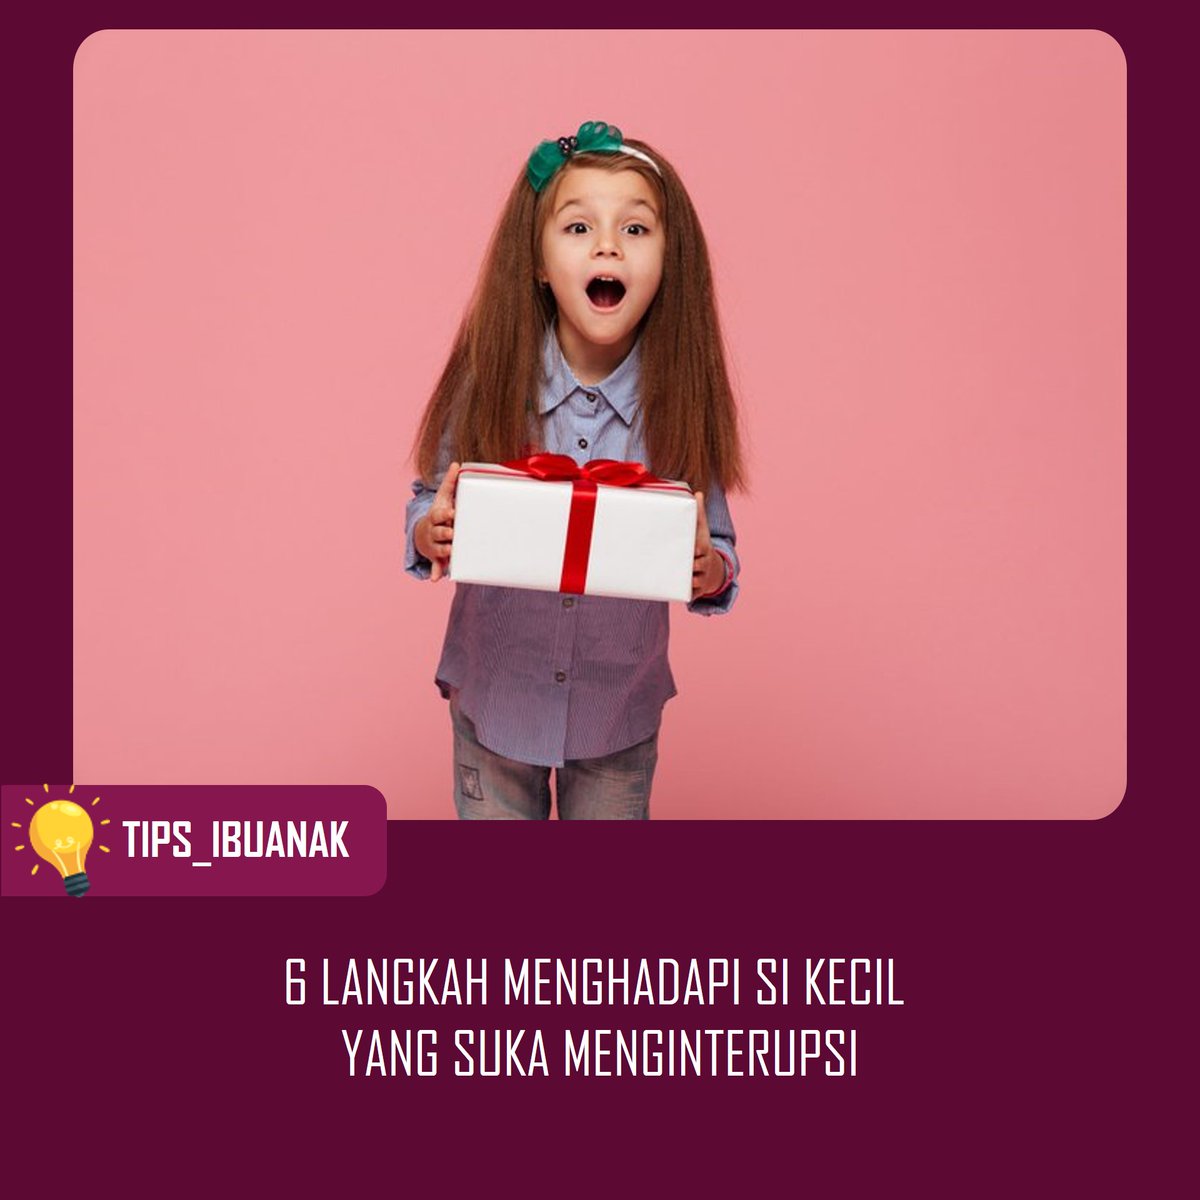 Sumber: @parentingindonesia
Jangan Lupa Like, Coment , Share!

1.BATASI WAKTU
2.JELASKAN DI AWAL
3.KAPAN BOLEH MENYELA
4.BAHASA ISYARAT
5.BERI AKTIVITAS
6.BERI PUJIAN

#kidsattitude #kidsmanners #parenting #parentingtips #parentingindonesia #tips_ibuanak #coolerbagnaimax